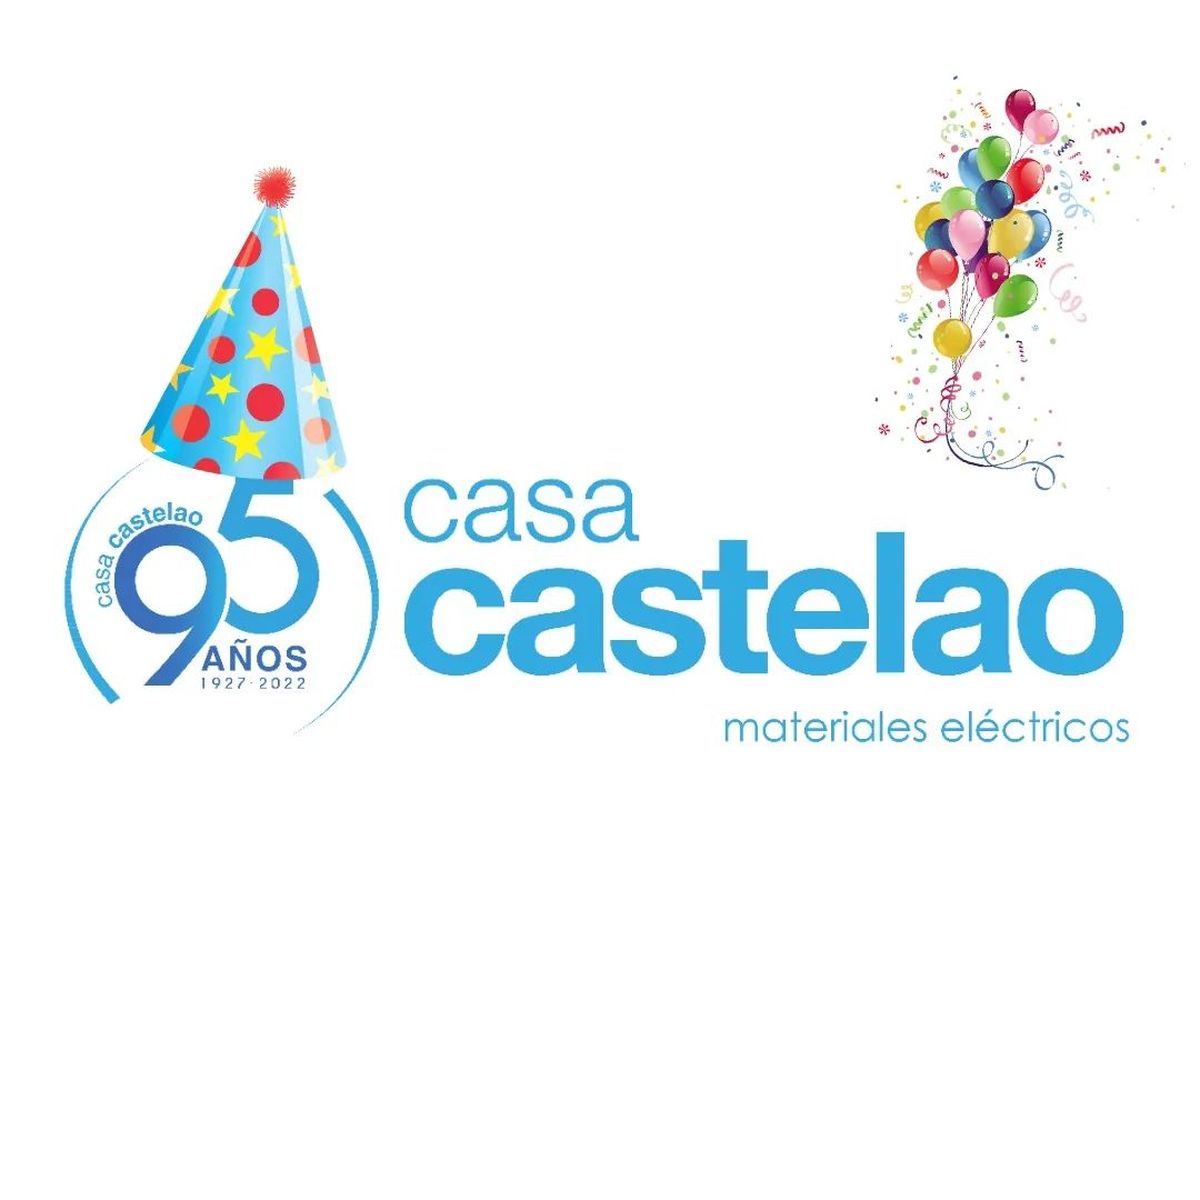 Casa Castelao cumple 95 años dentro del sector eléctrico